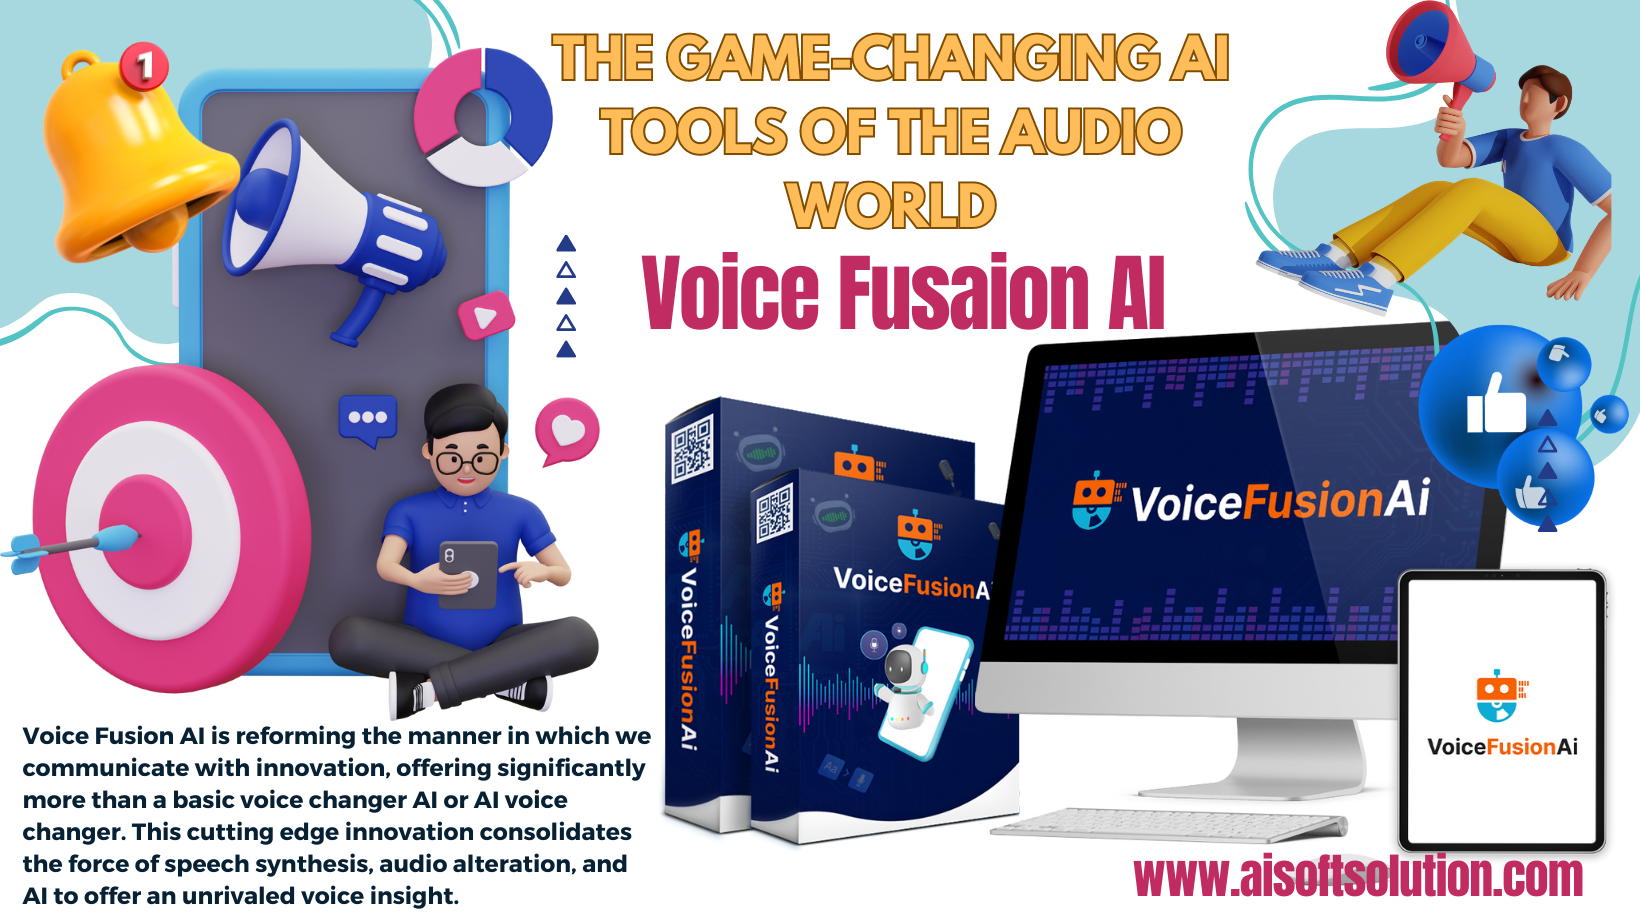 Voice Fusion AI